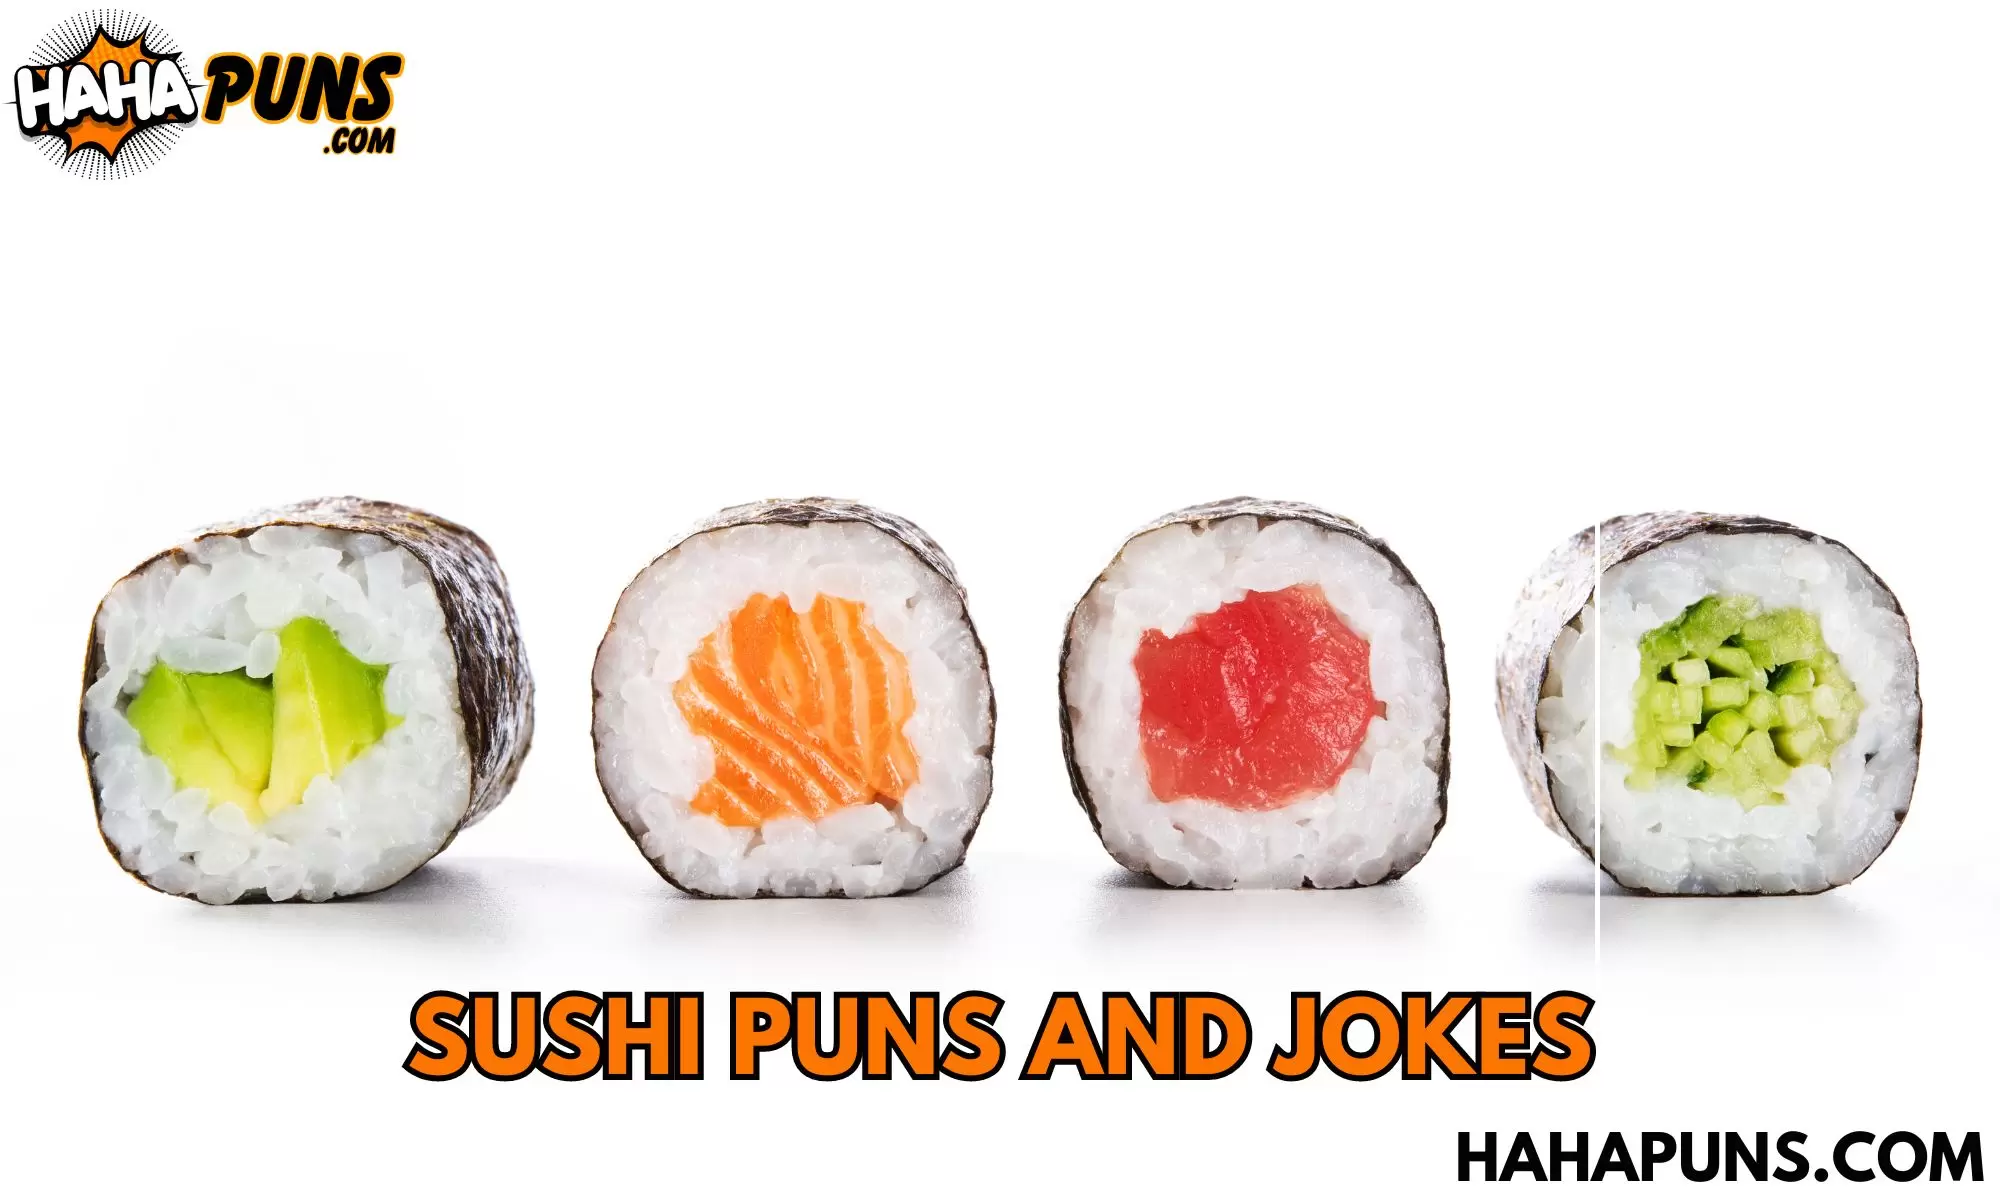 Sushi Puns and Jokes